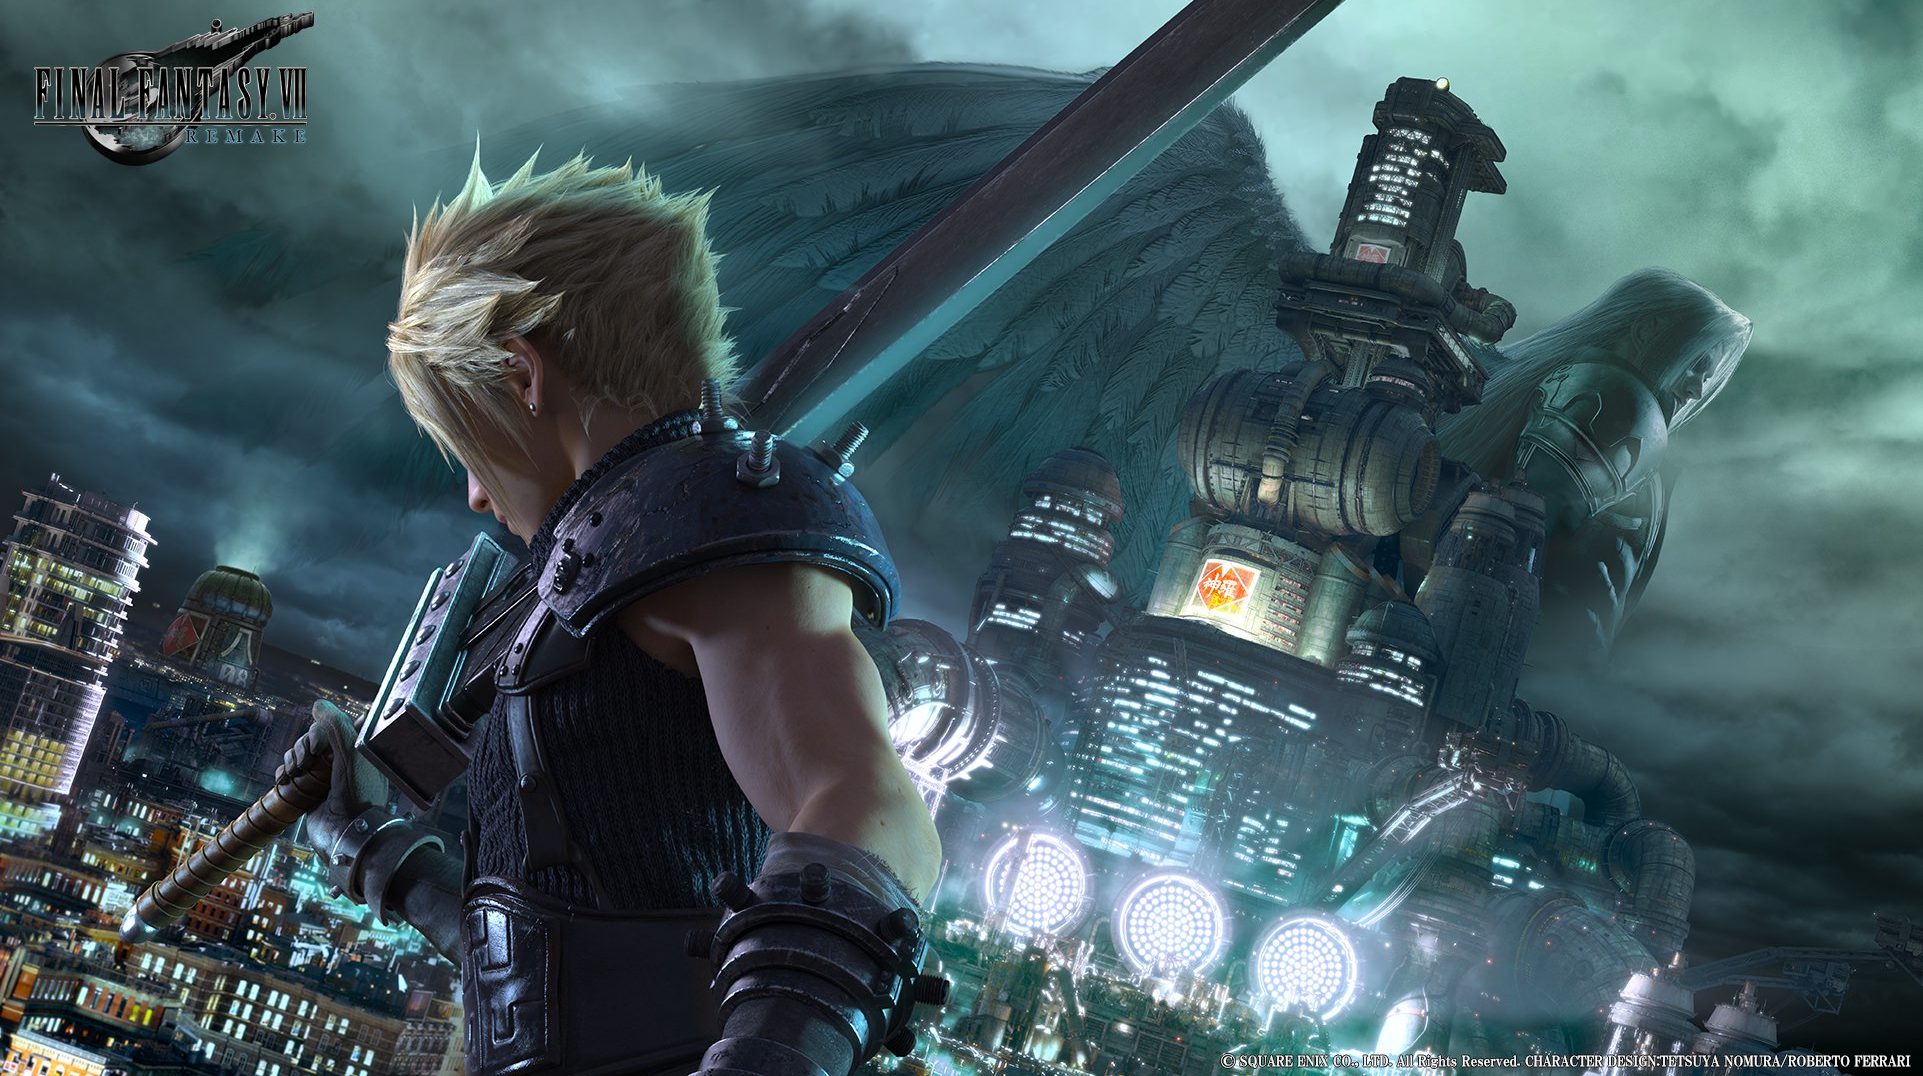 Final Fantasy 7 remake is under development for Xbox One - GameStop Leak